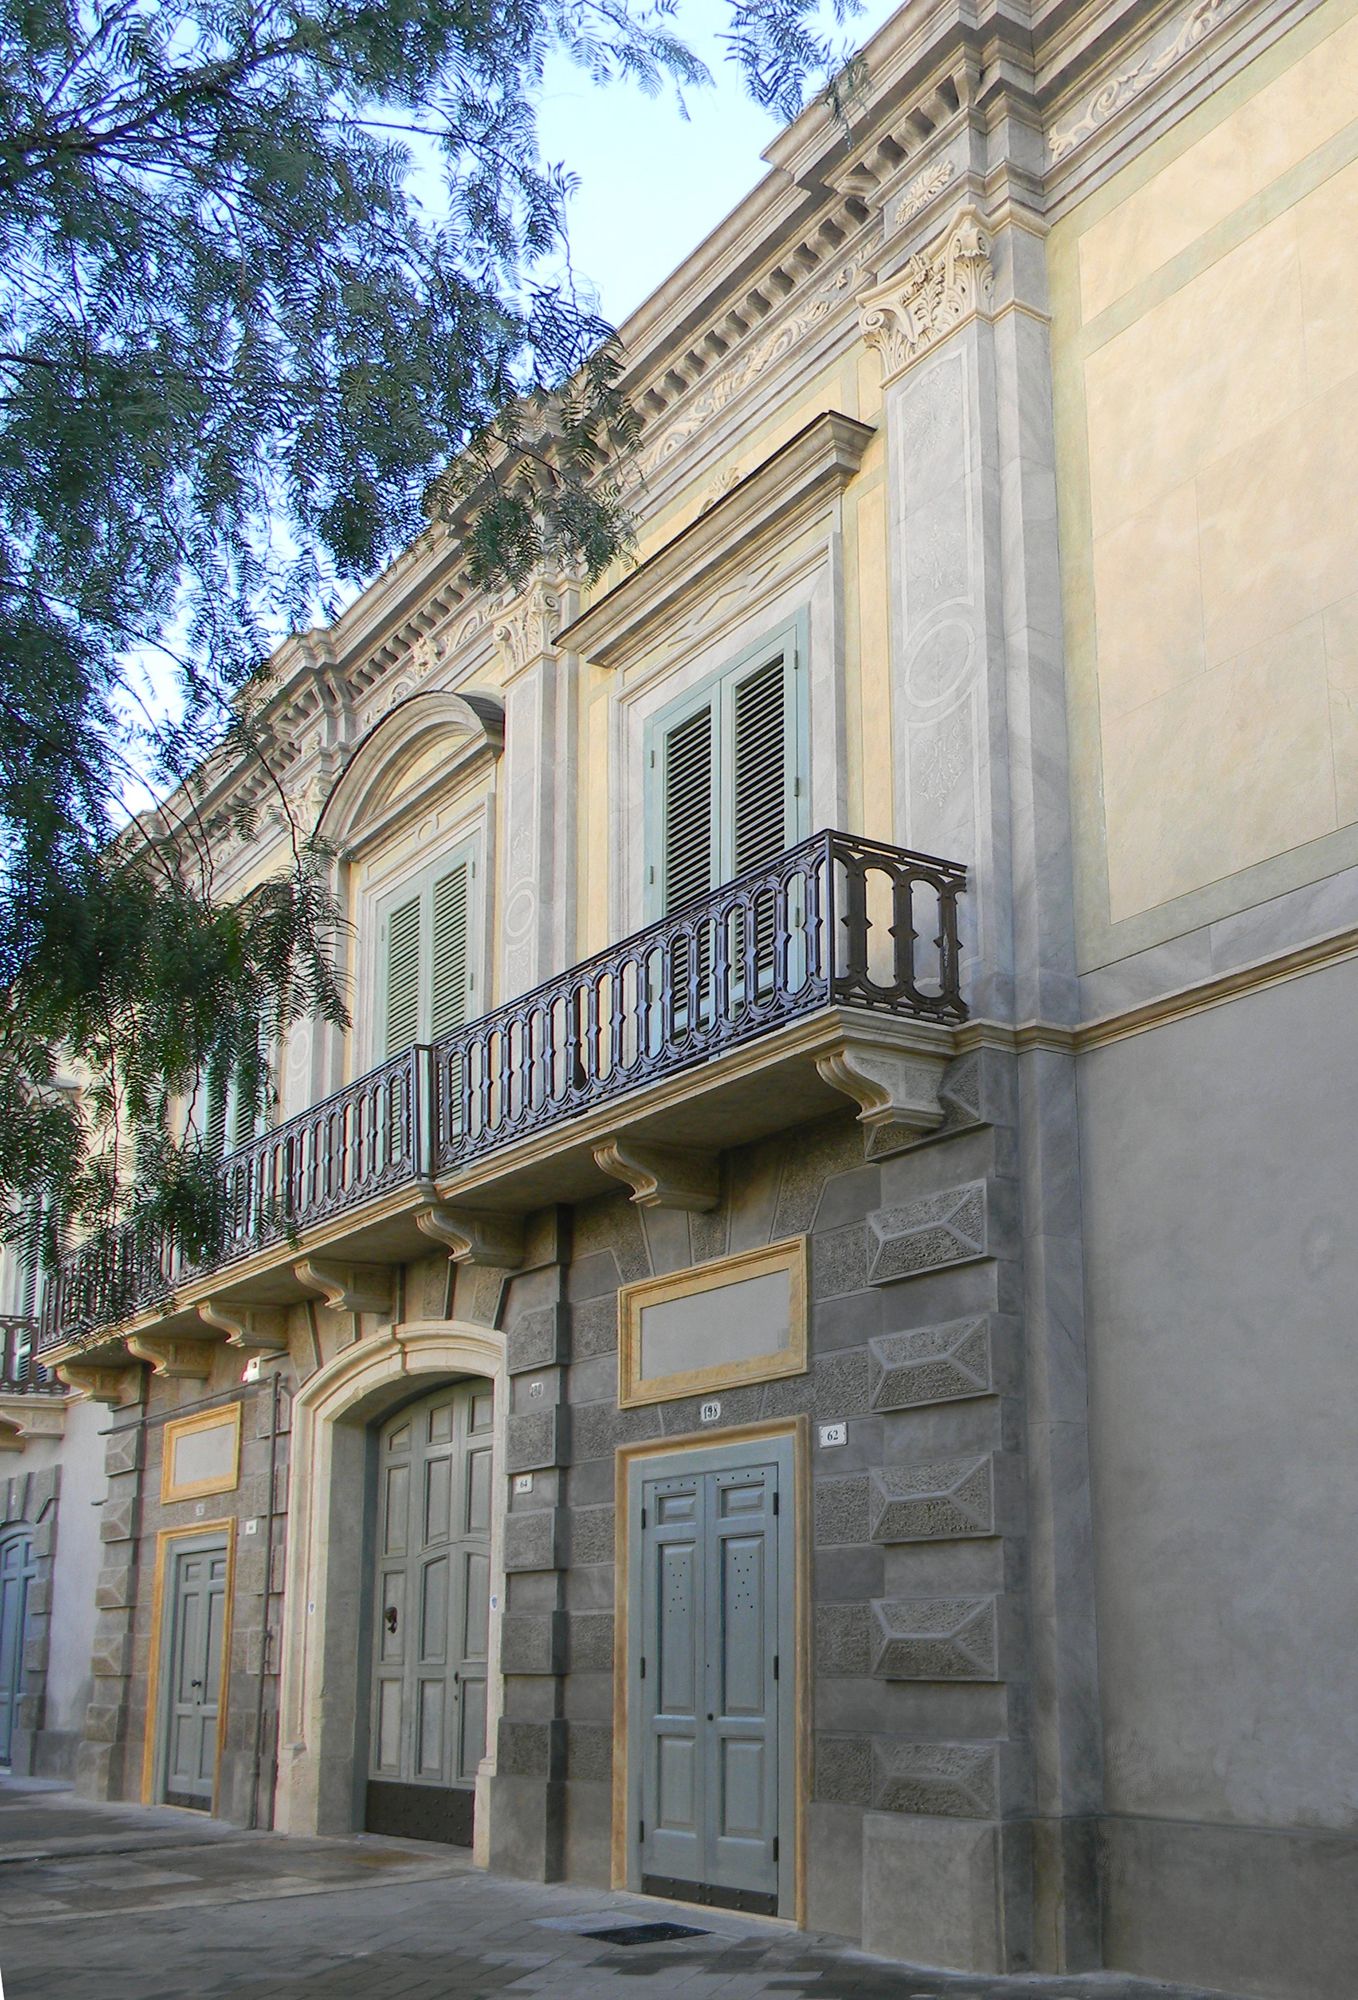 Francis Ford Coppola Resort- Palazzo Margherita realizzato da 0-co2 Arch. Bartolomeo Conterio, Assistenza tecnica a Lecce